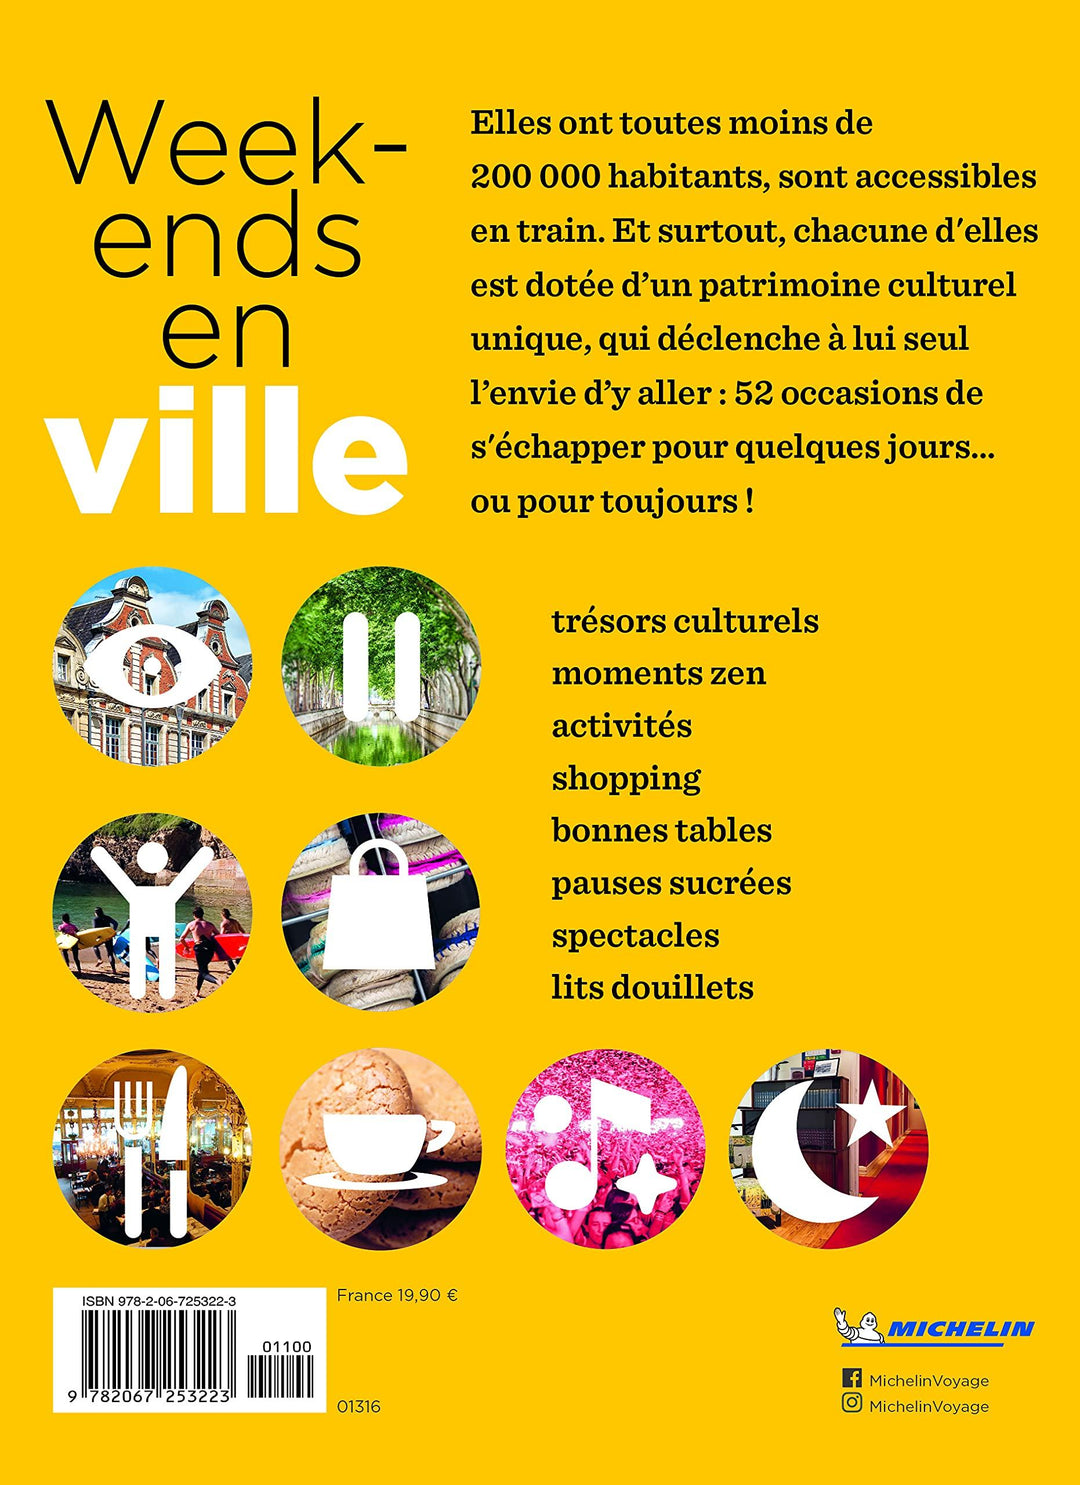 Guide de voyage - Week-ends en ville, redécouvrez 52 villes françaises - Édition 2021 | Michelin guide de voyage Michelin 